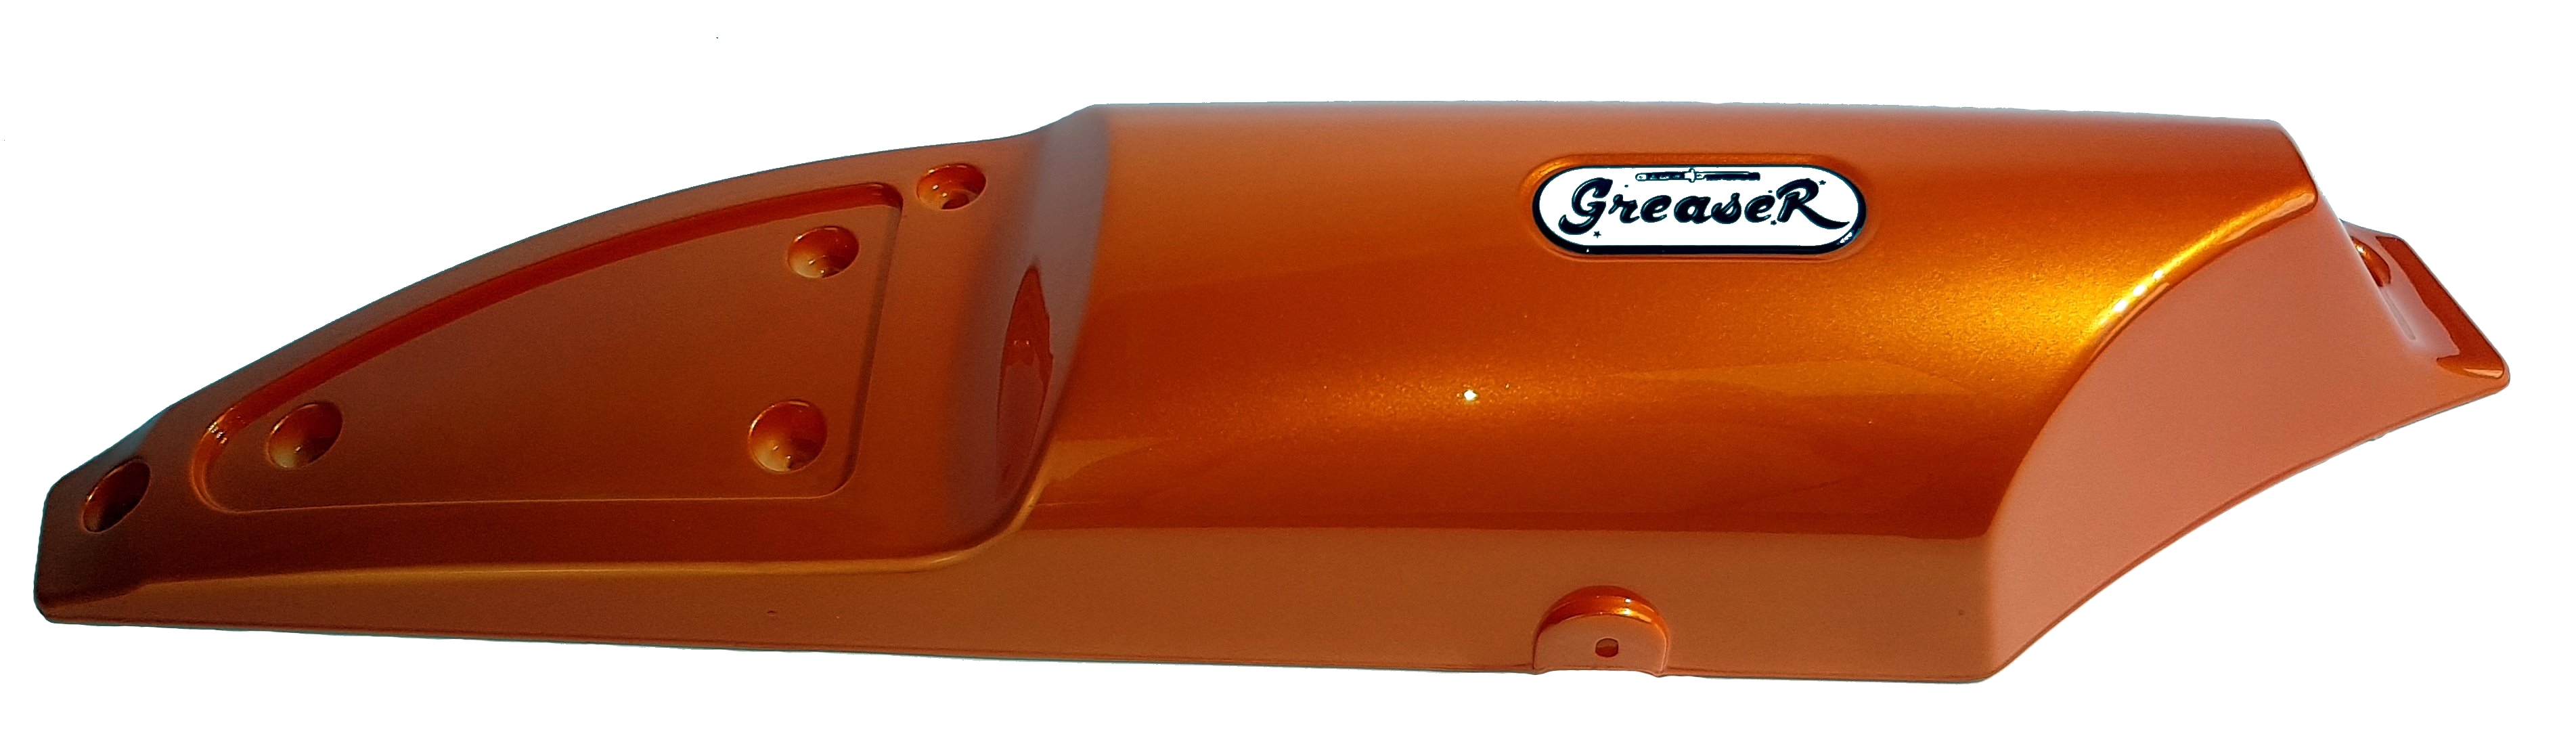 Greaser Tankverkleidung Set orange